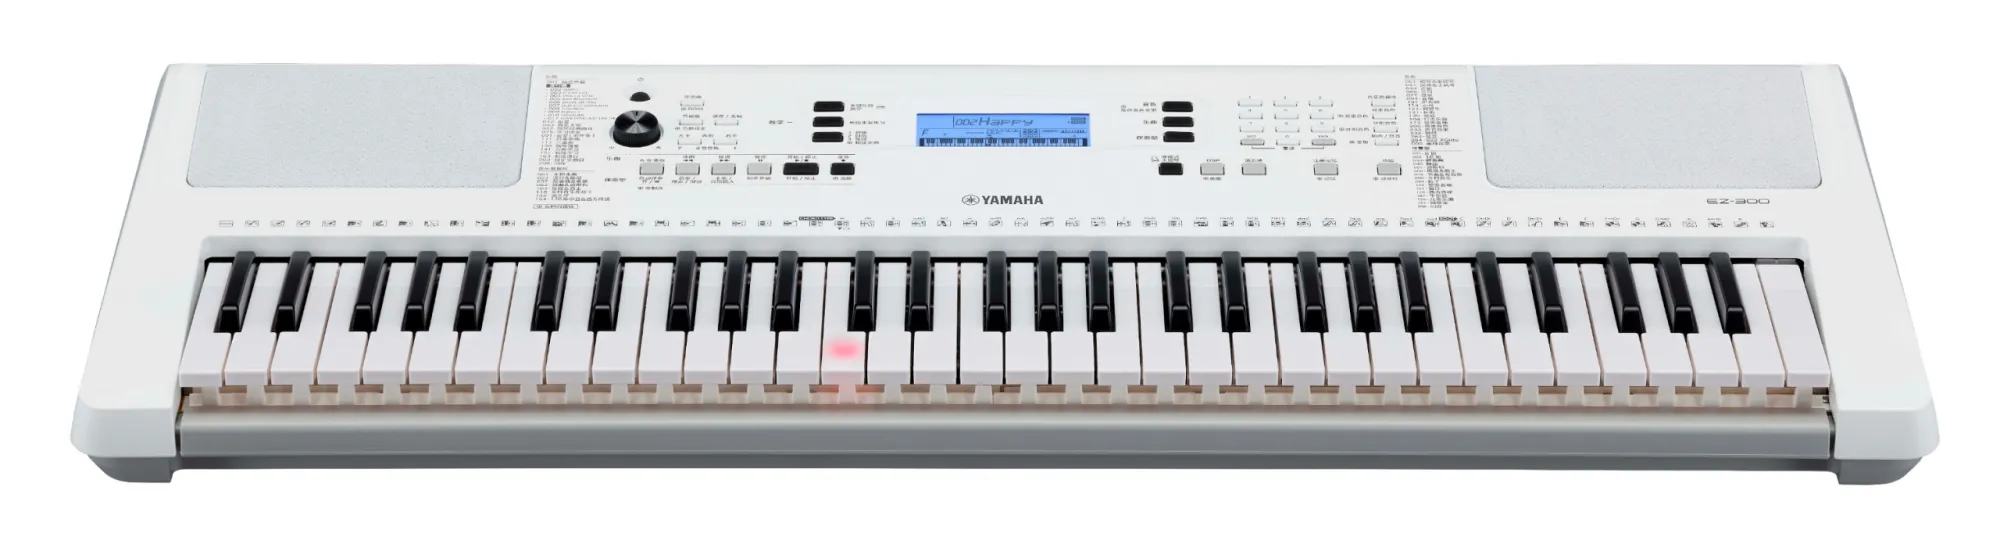 EZ-300 Leuchttasten-Keyboard